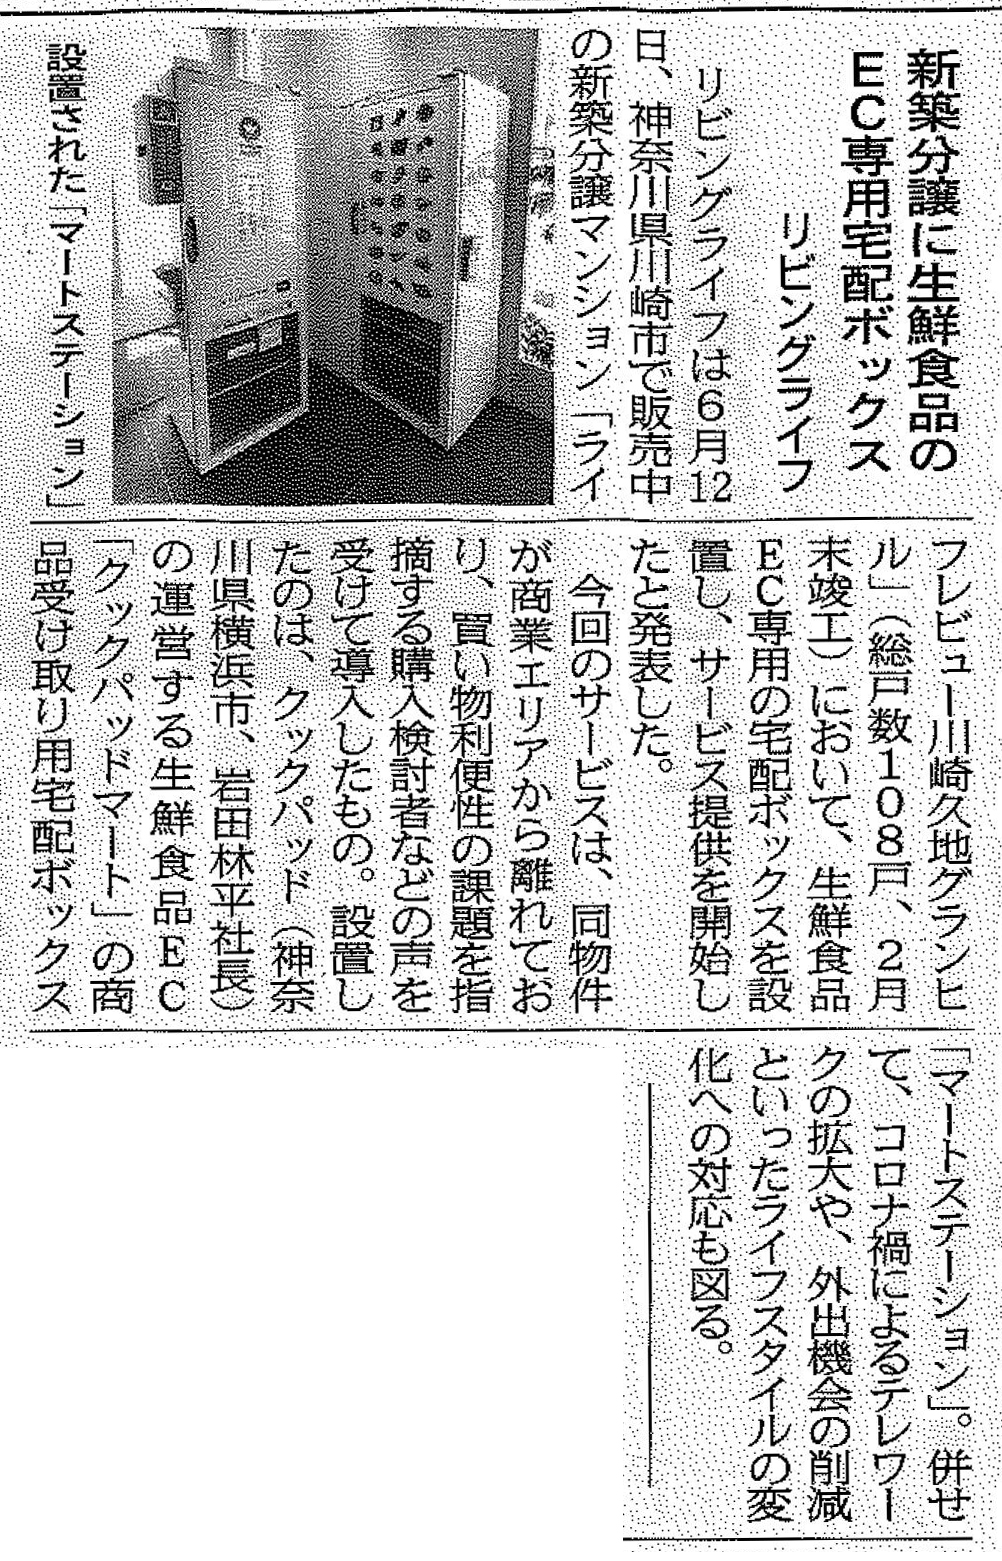 『住宅新報 6/22号』に「ライフレビュー川崎久地グランヒル」の生鮮宅配サービス導入の記事が掲載されました。